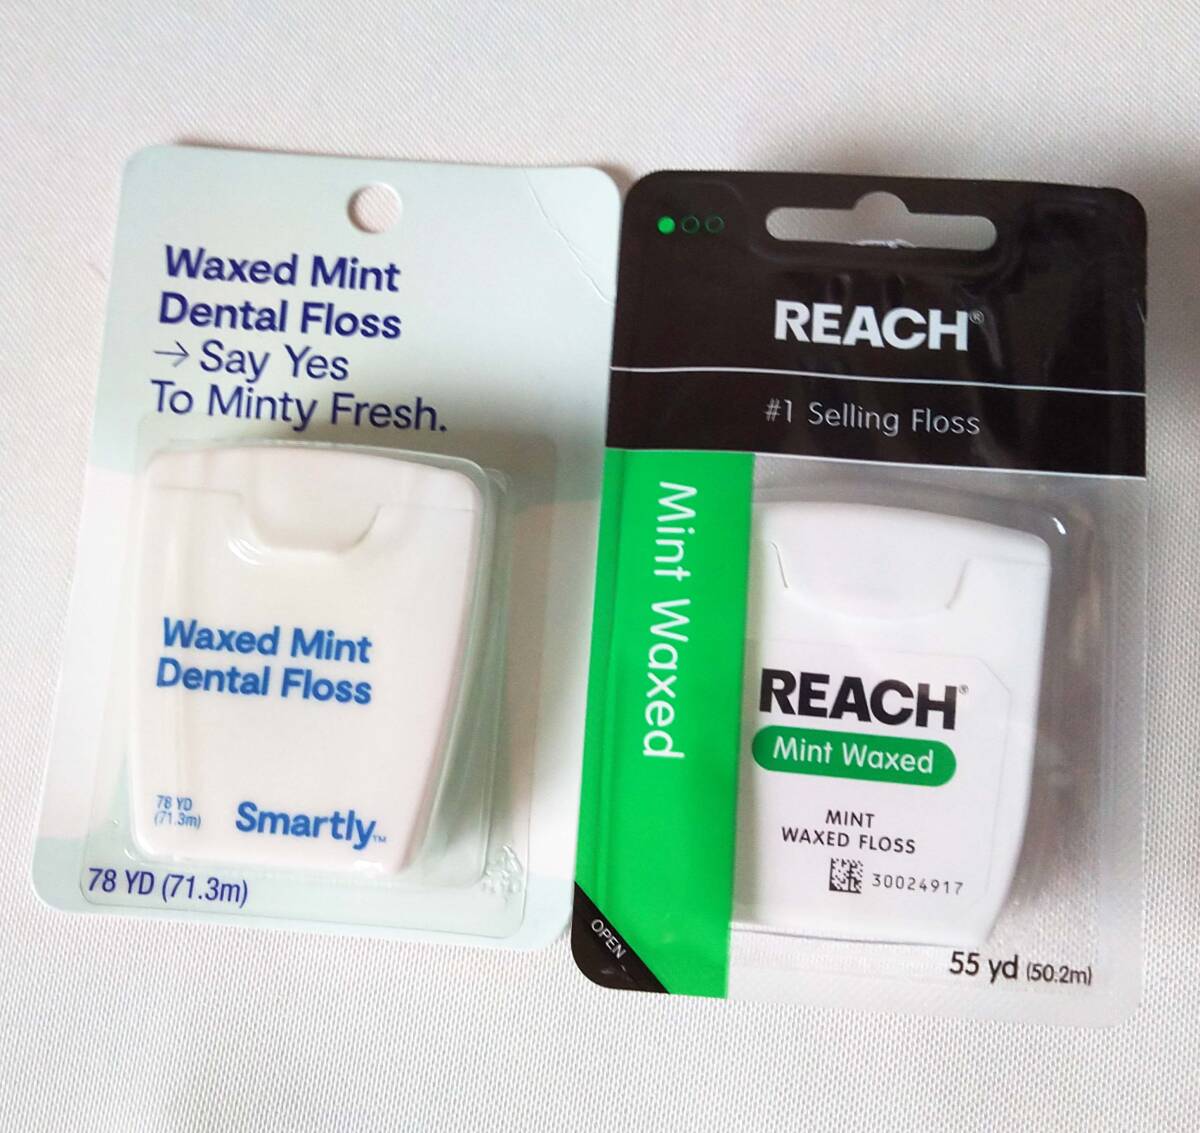  Reach & Target Smartly dental floss new goods wax * mint 121.5m 2 piece set free shipping 